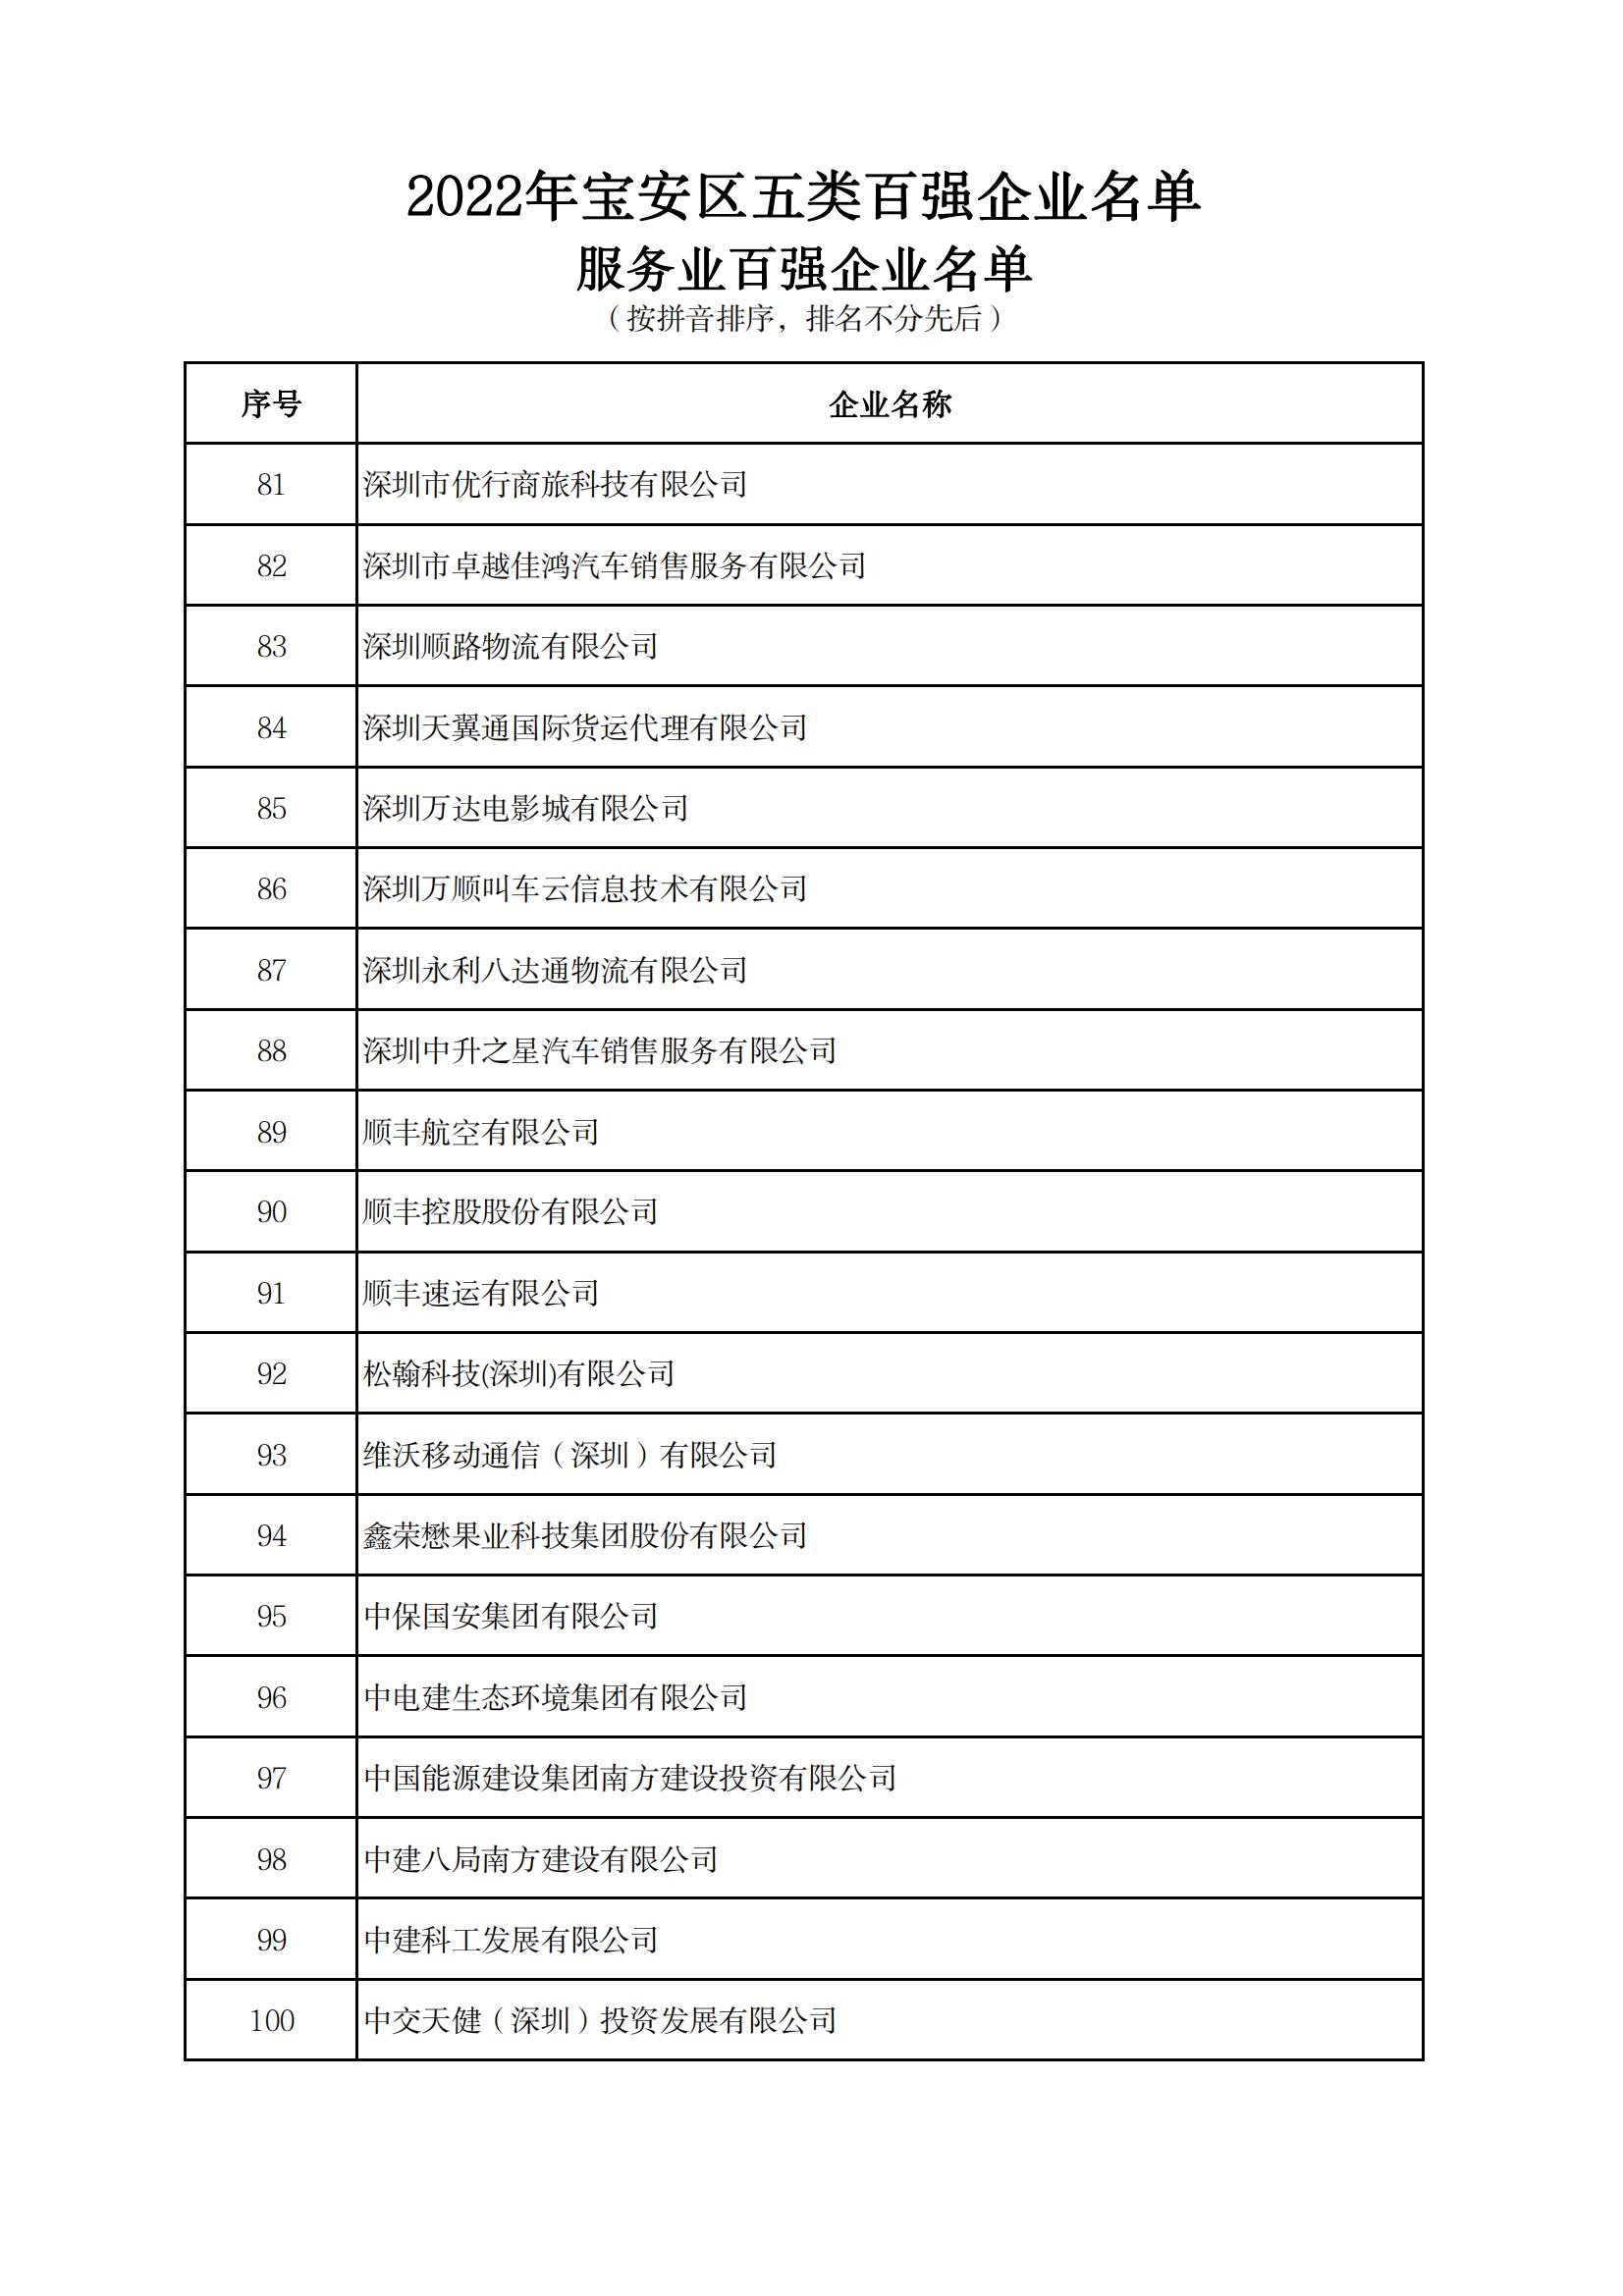 附件：2022年宝安区五类百强企业名单_14.jpg